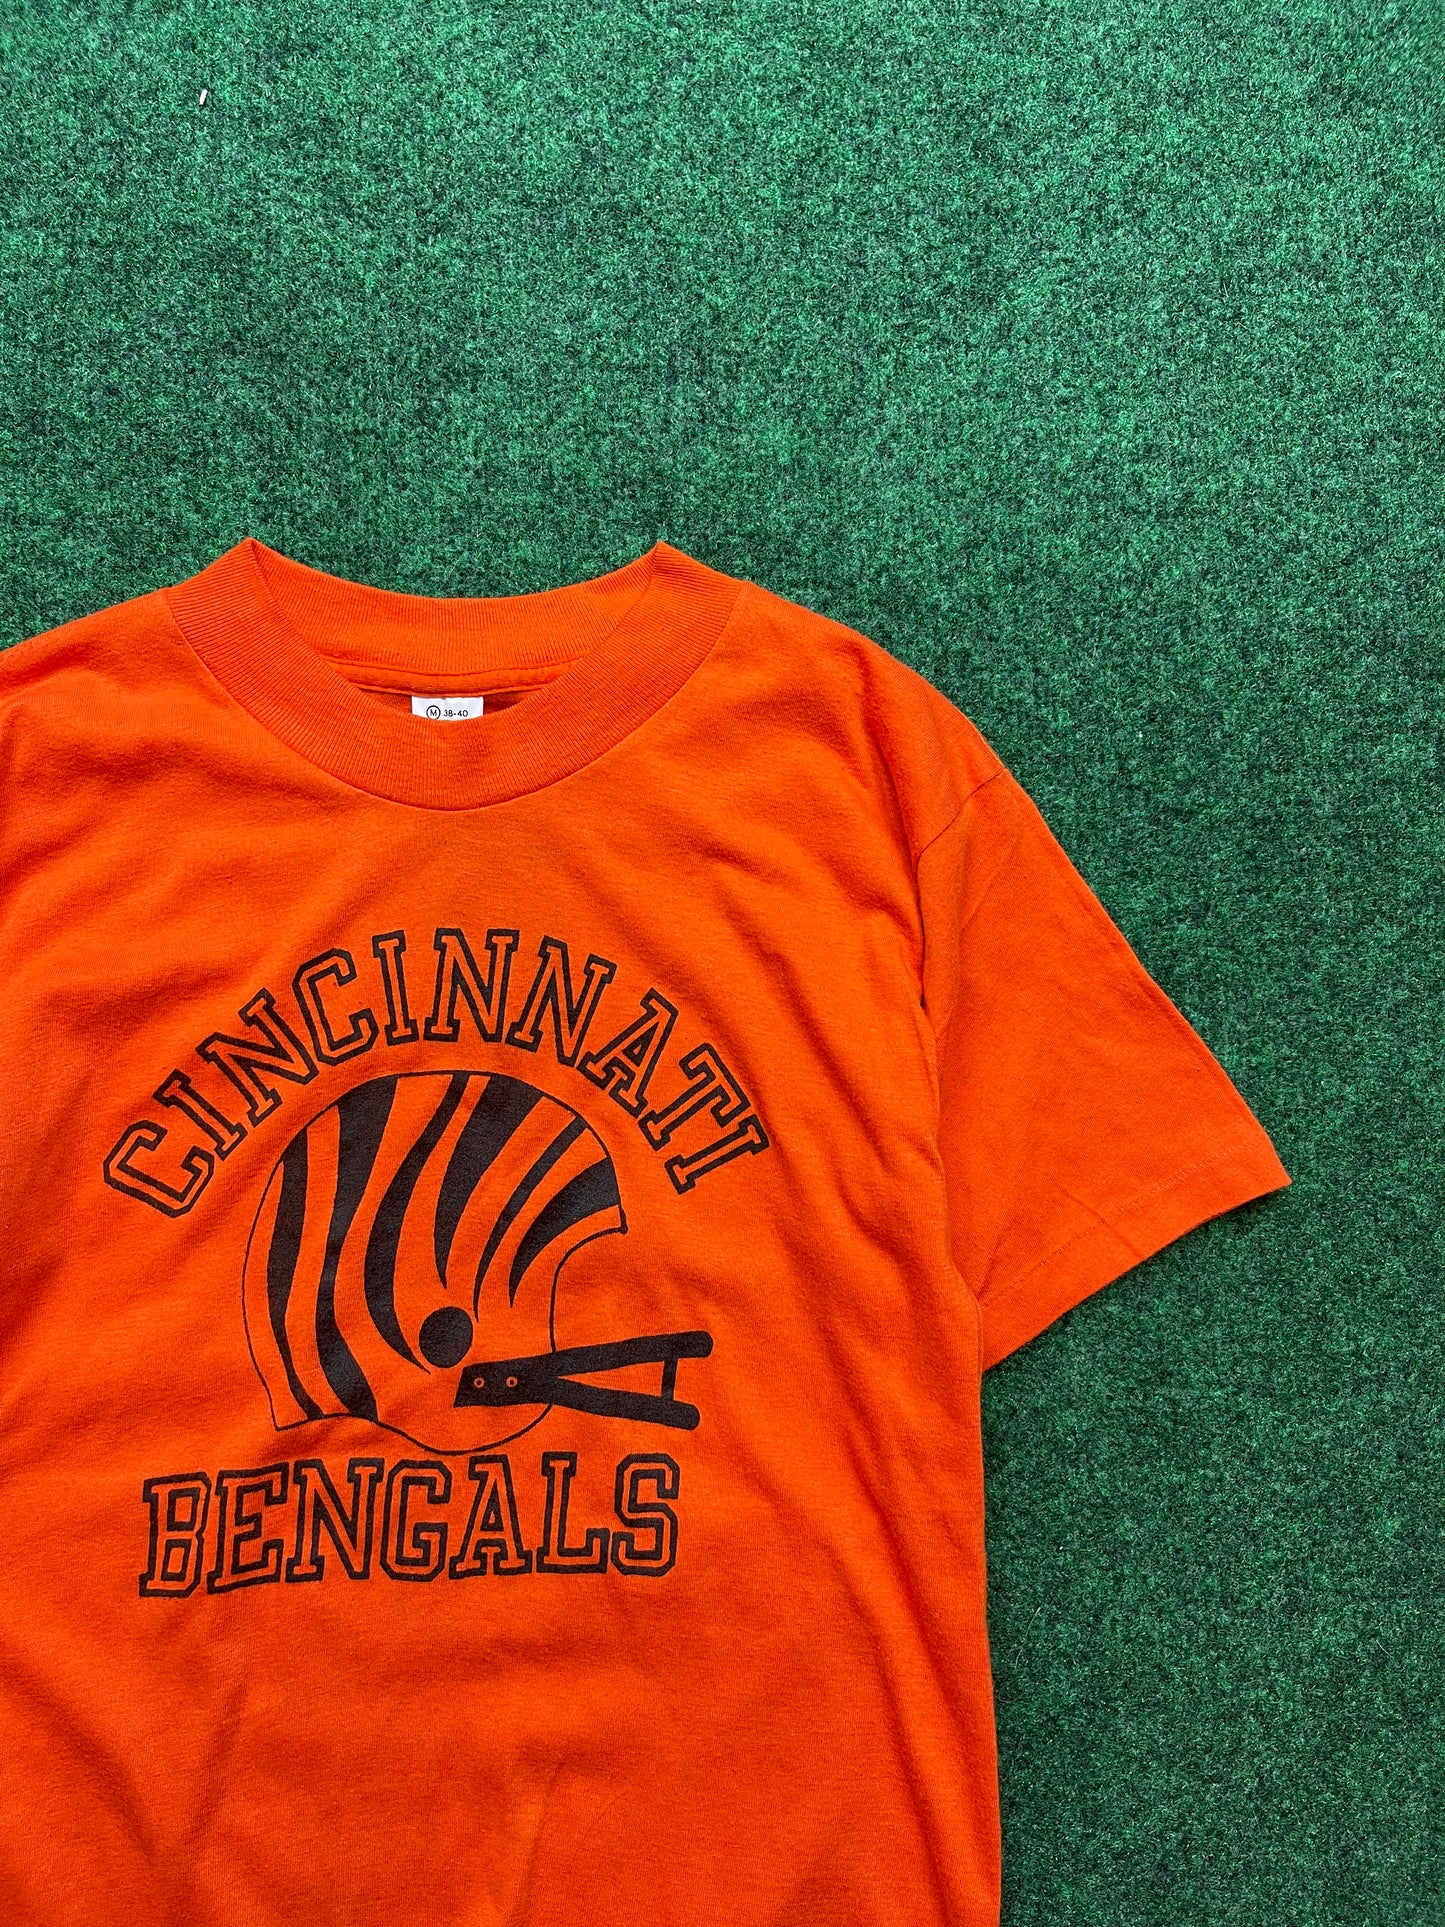 80’s Cincinnati Bengals Vintage NFL Tee (Small)